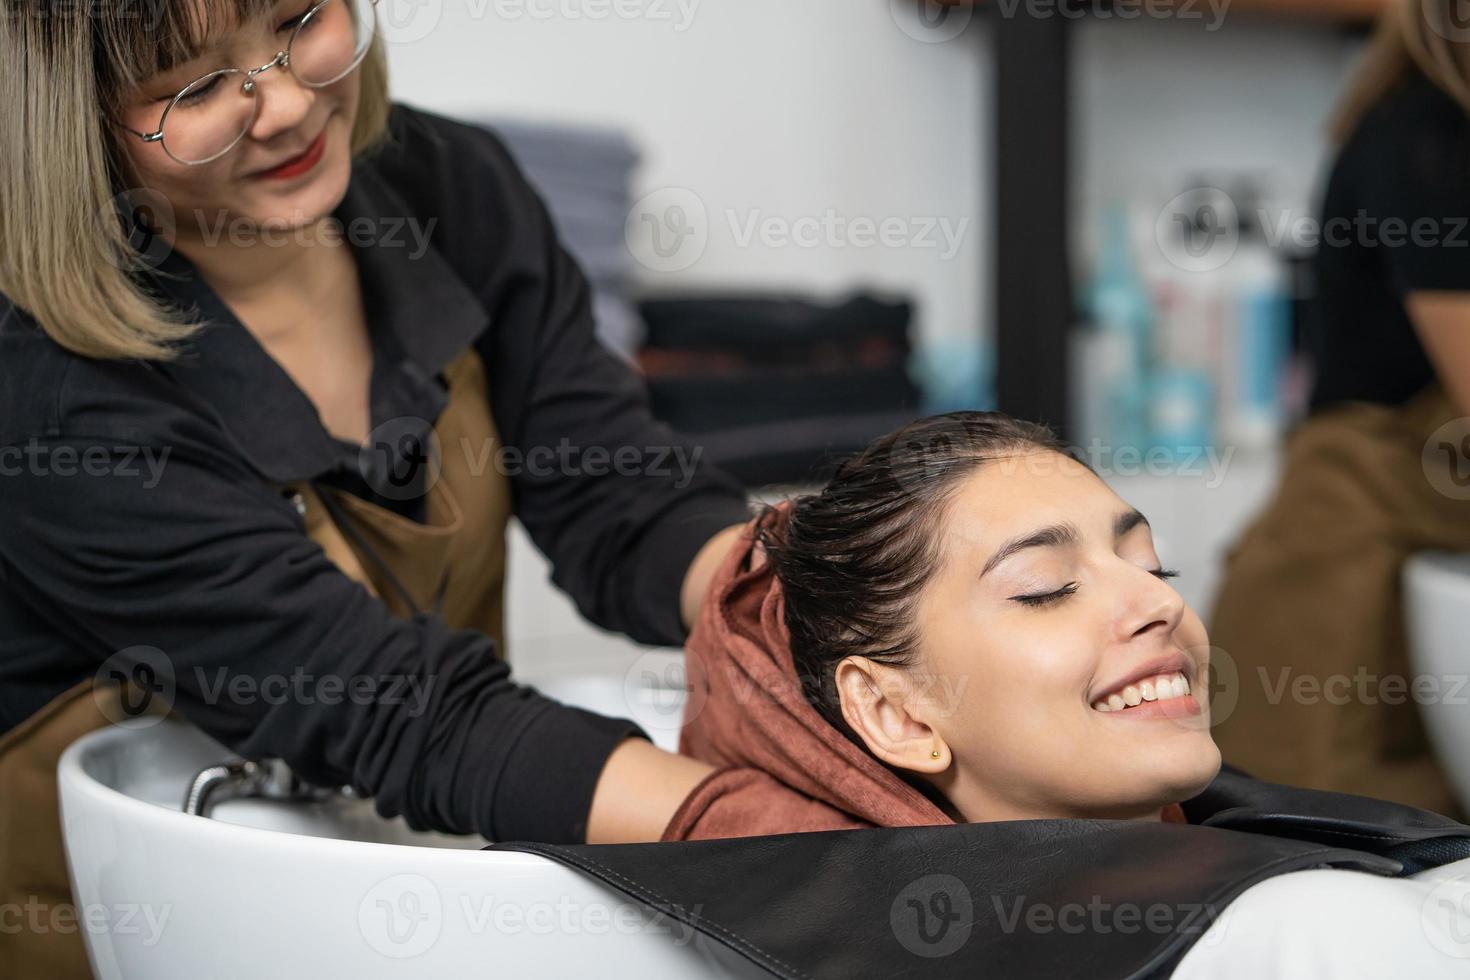 les belles femmes caucasiennes se sentent détendues et à l'aise tout en se lavant les cheveux avec du shampoing et des massages. studio de salon de coiffure avec concept de cheveux élégant, beauté et mode. photo